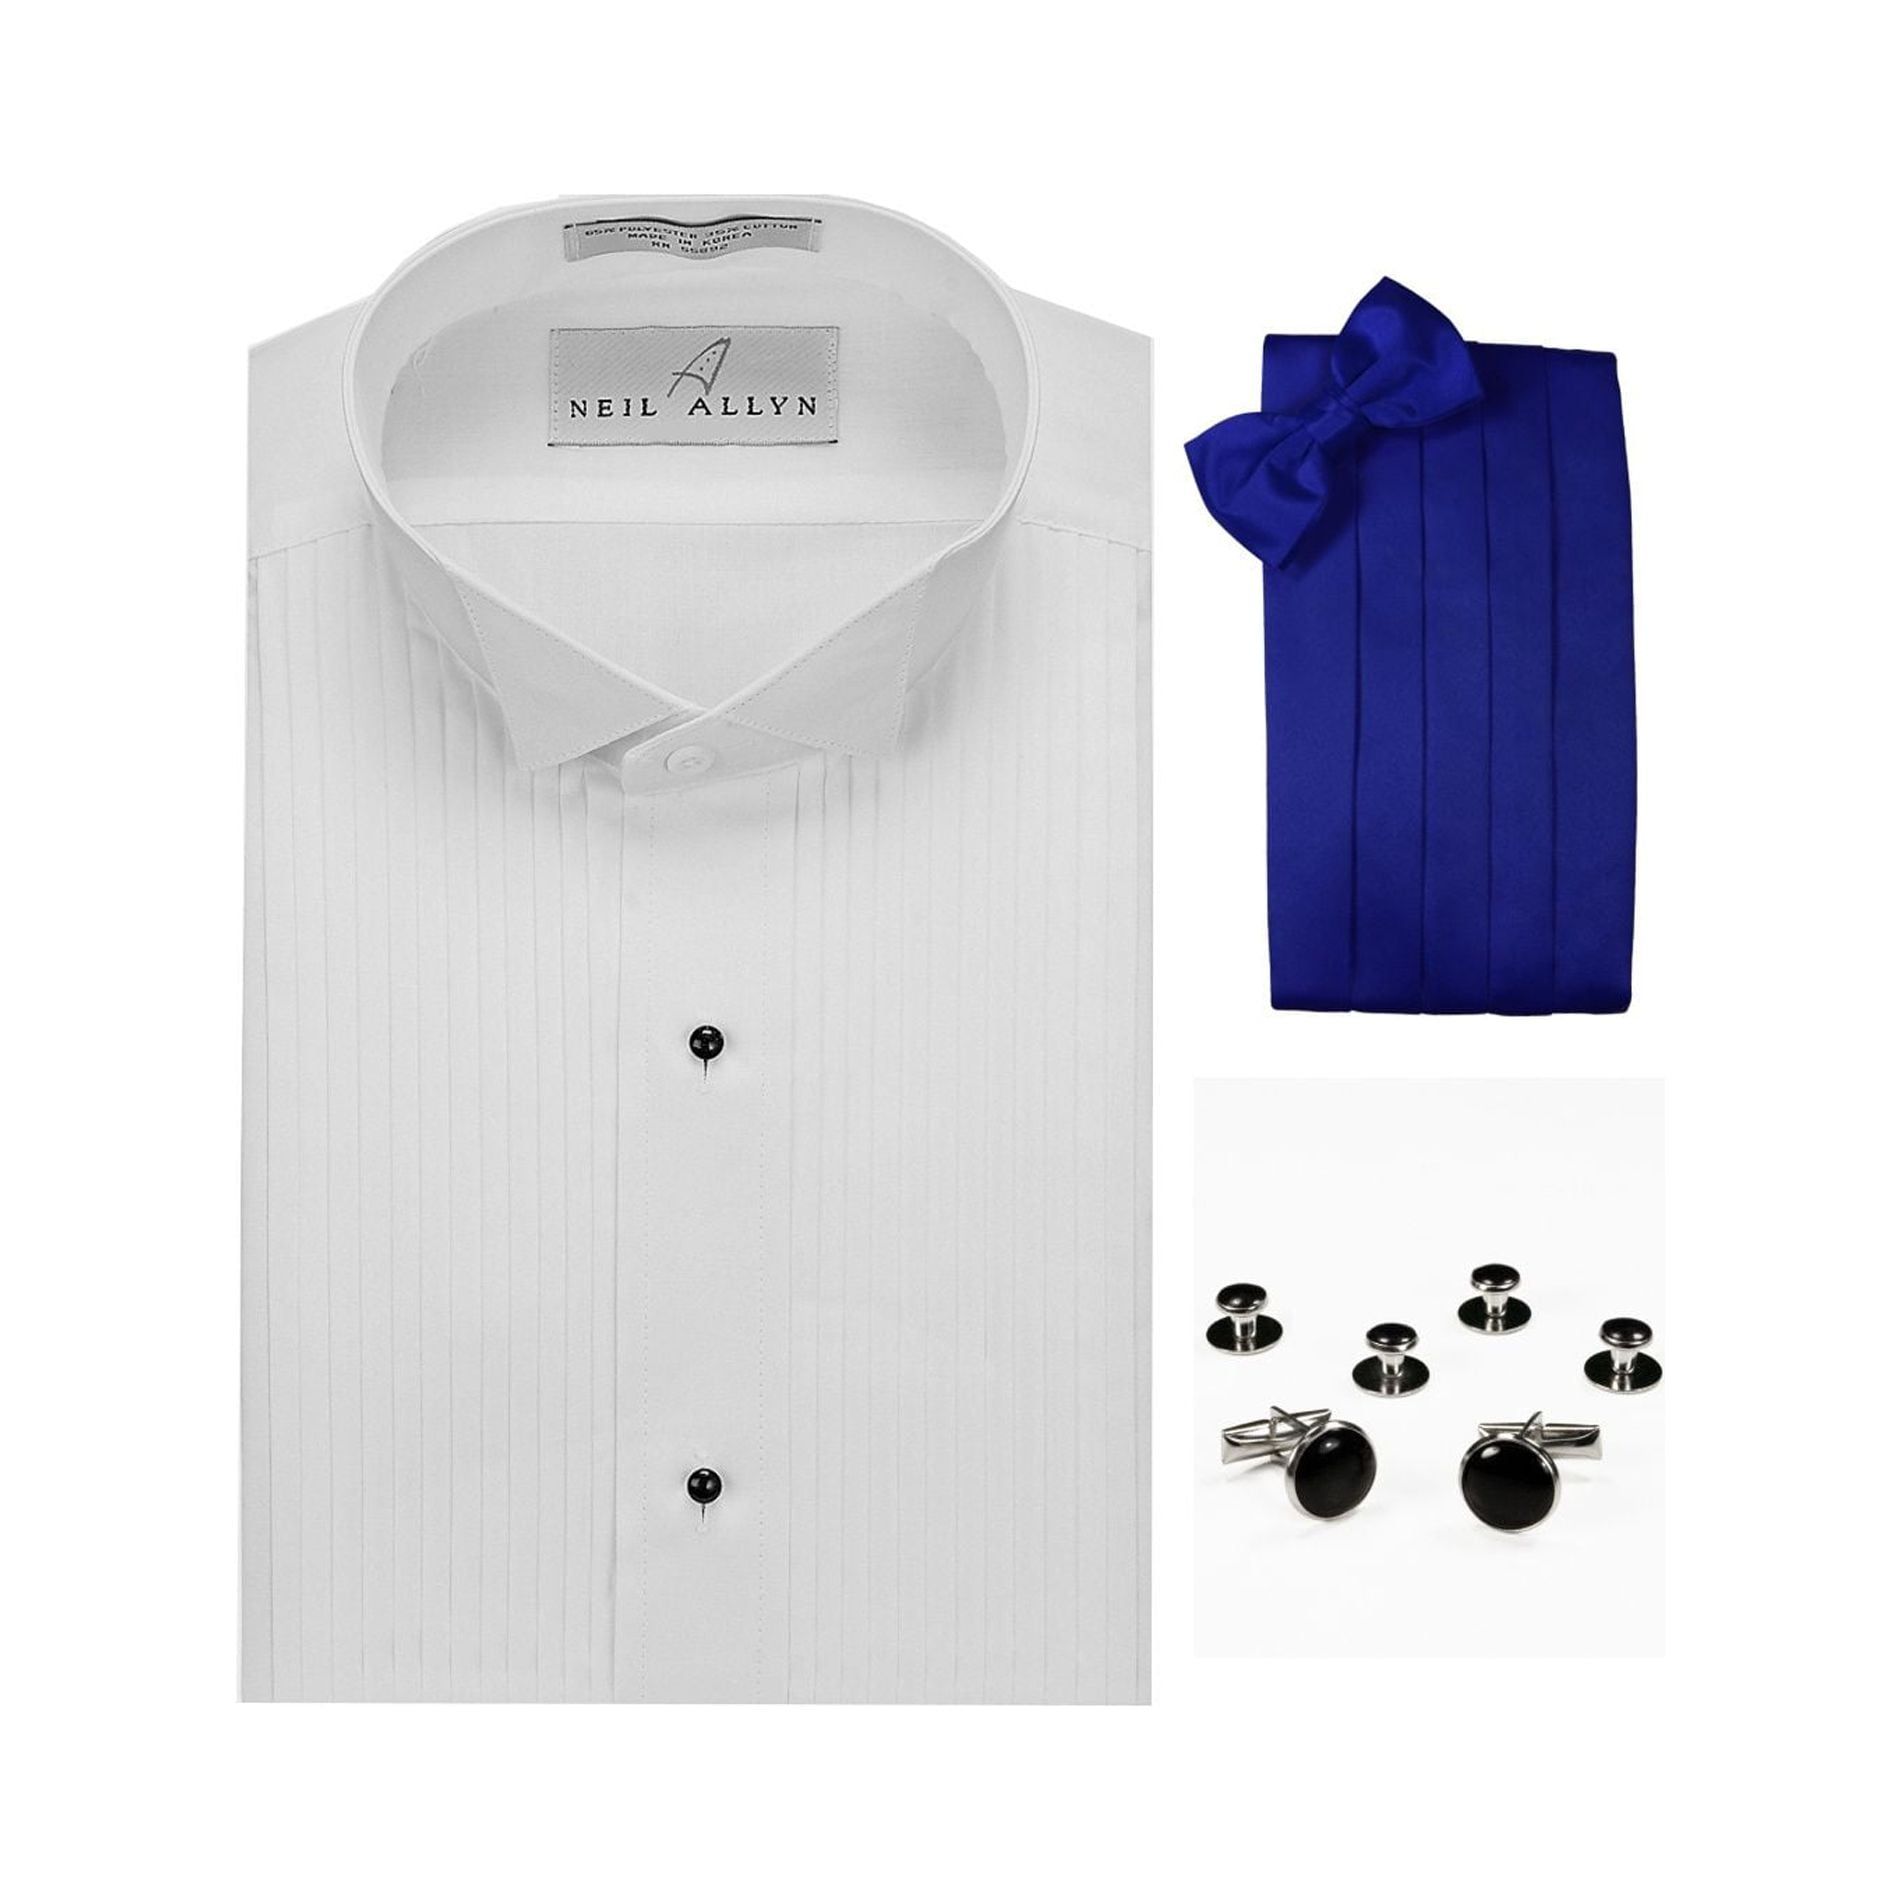 Wing Collar Formal Tuxedo Shirt, Royal Blue Cummerbund, Bow-Tie, Cuff ...